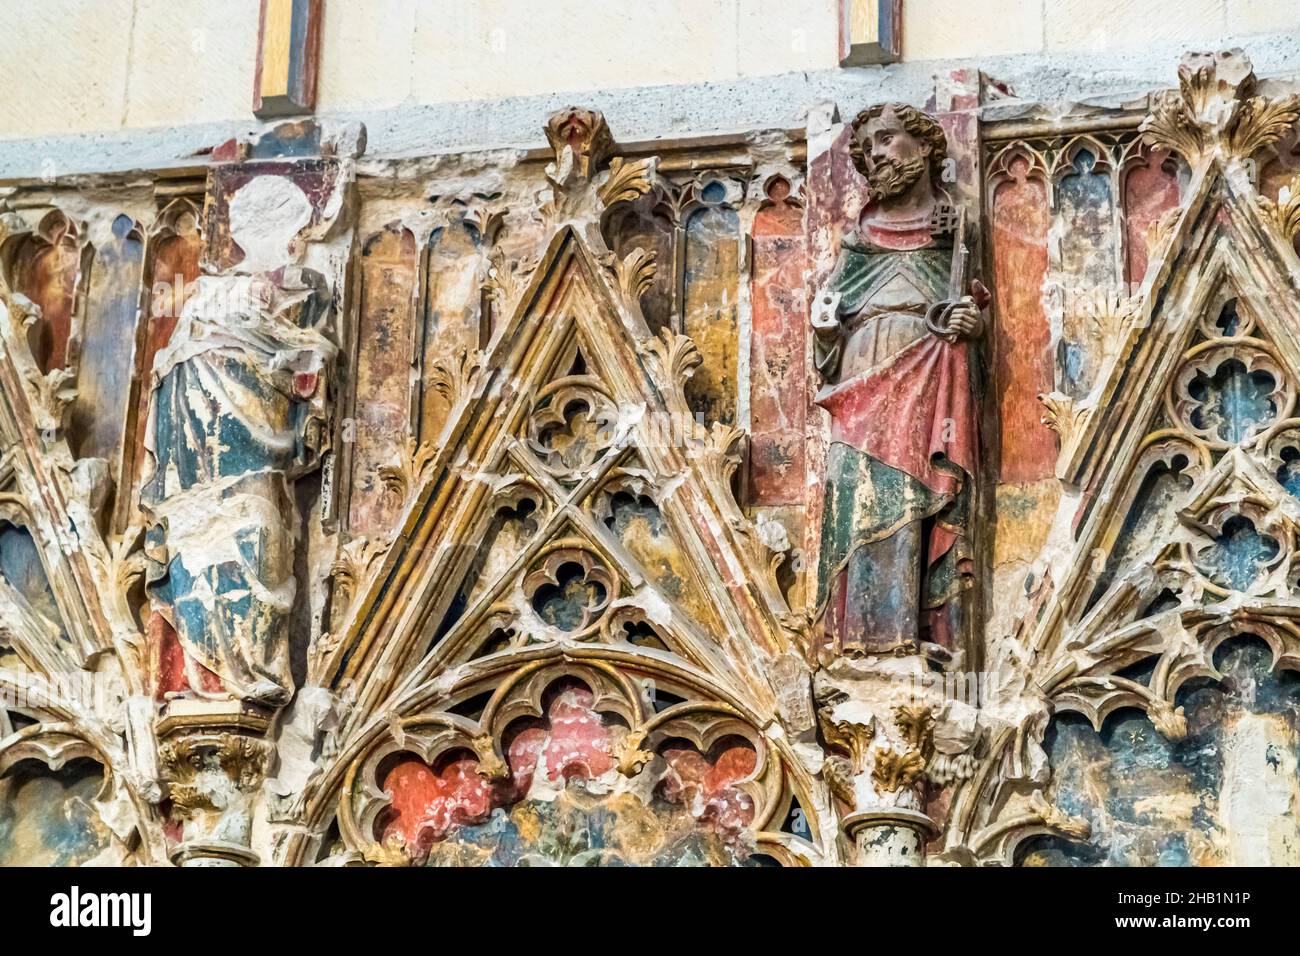 Cathédrale Saint-Just et Saint-Pasteur à Narbonne, France.La cathédrale avec transept et chœur de 40m haut et tapisseries a été construite de 1272 à 1340, mais n'a jamais été achevée.L'apôtre Pierre est représenté avec une clé Banque D'Images